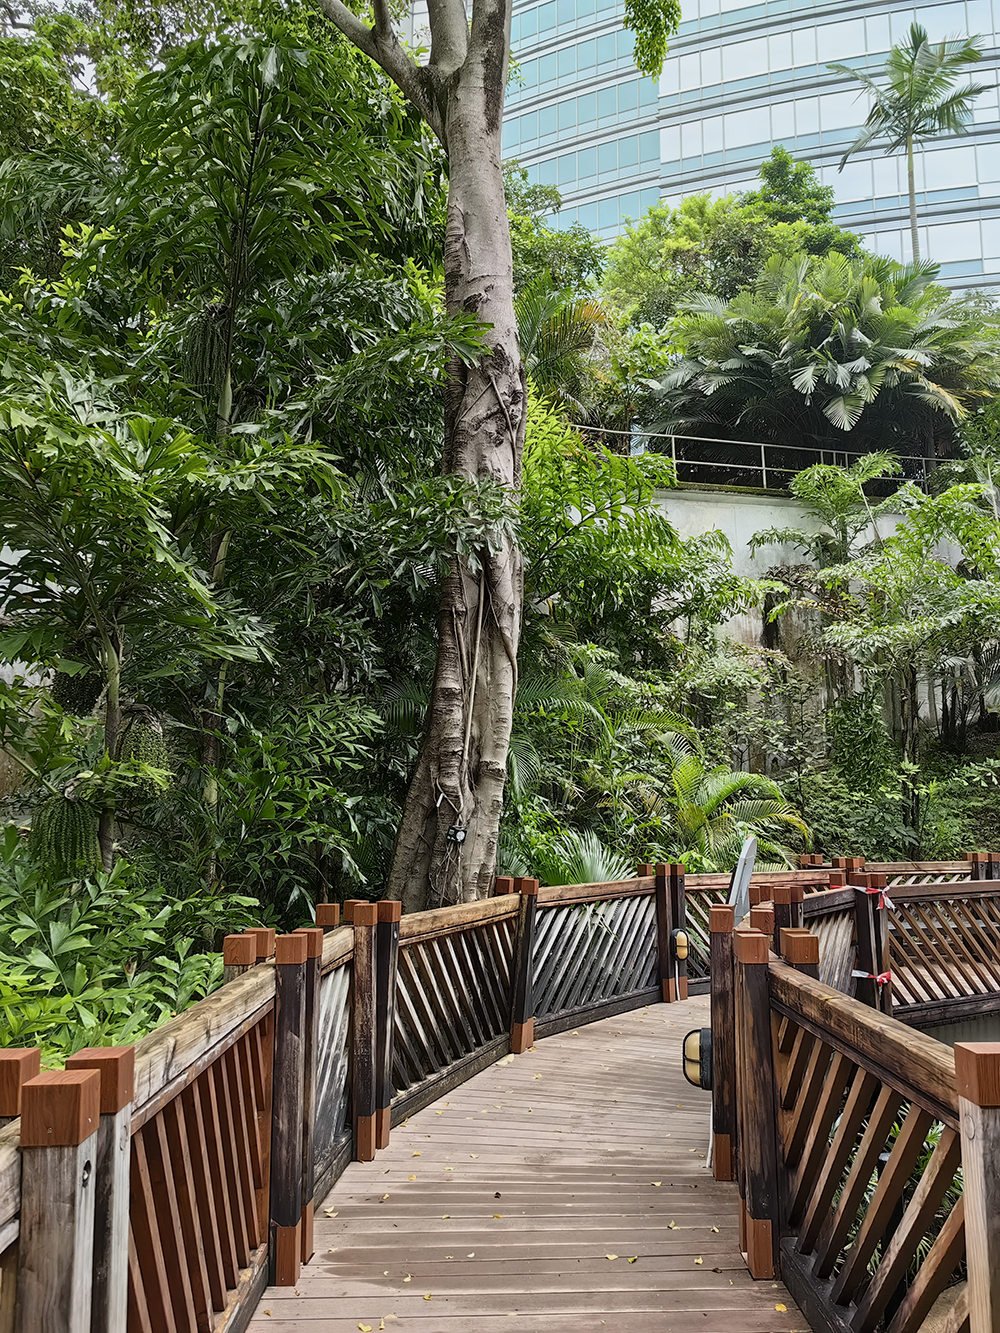 Городской парк Гонконга в центральном районе. Много растений, пешеходных дорожек, прудов, вольеров с птицами